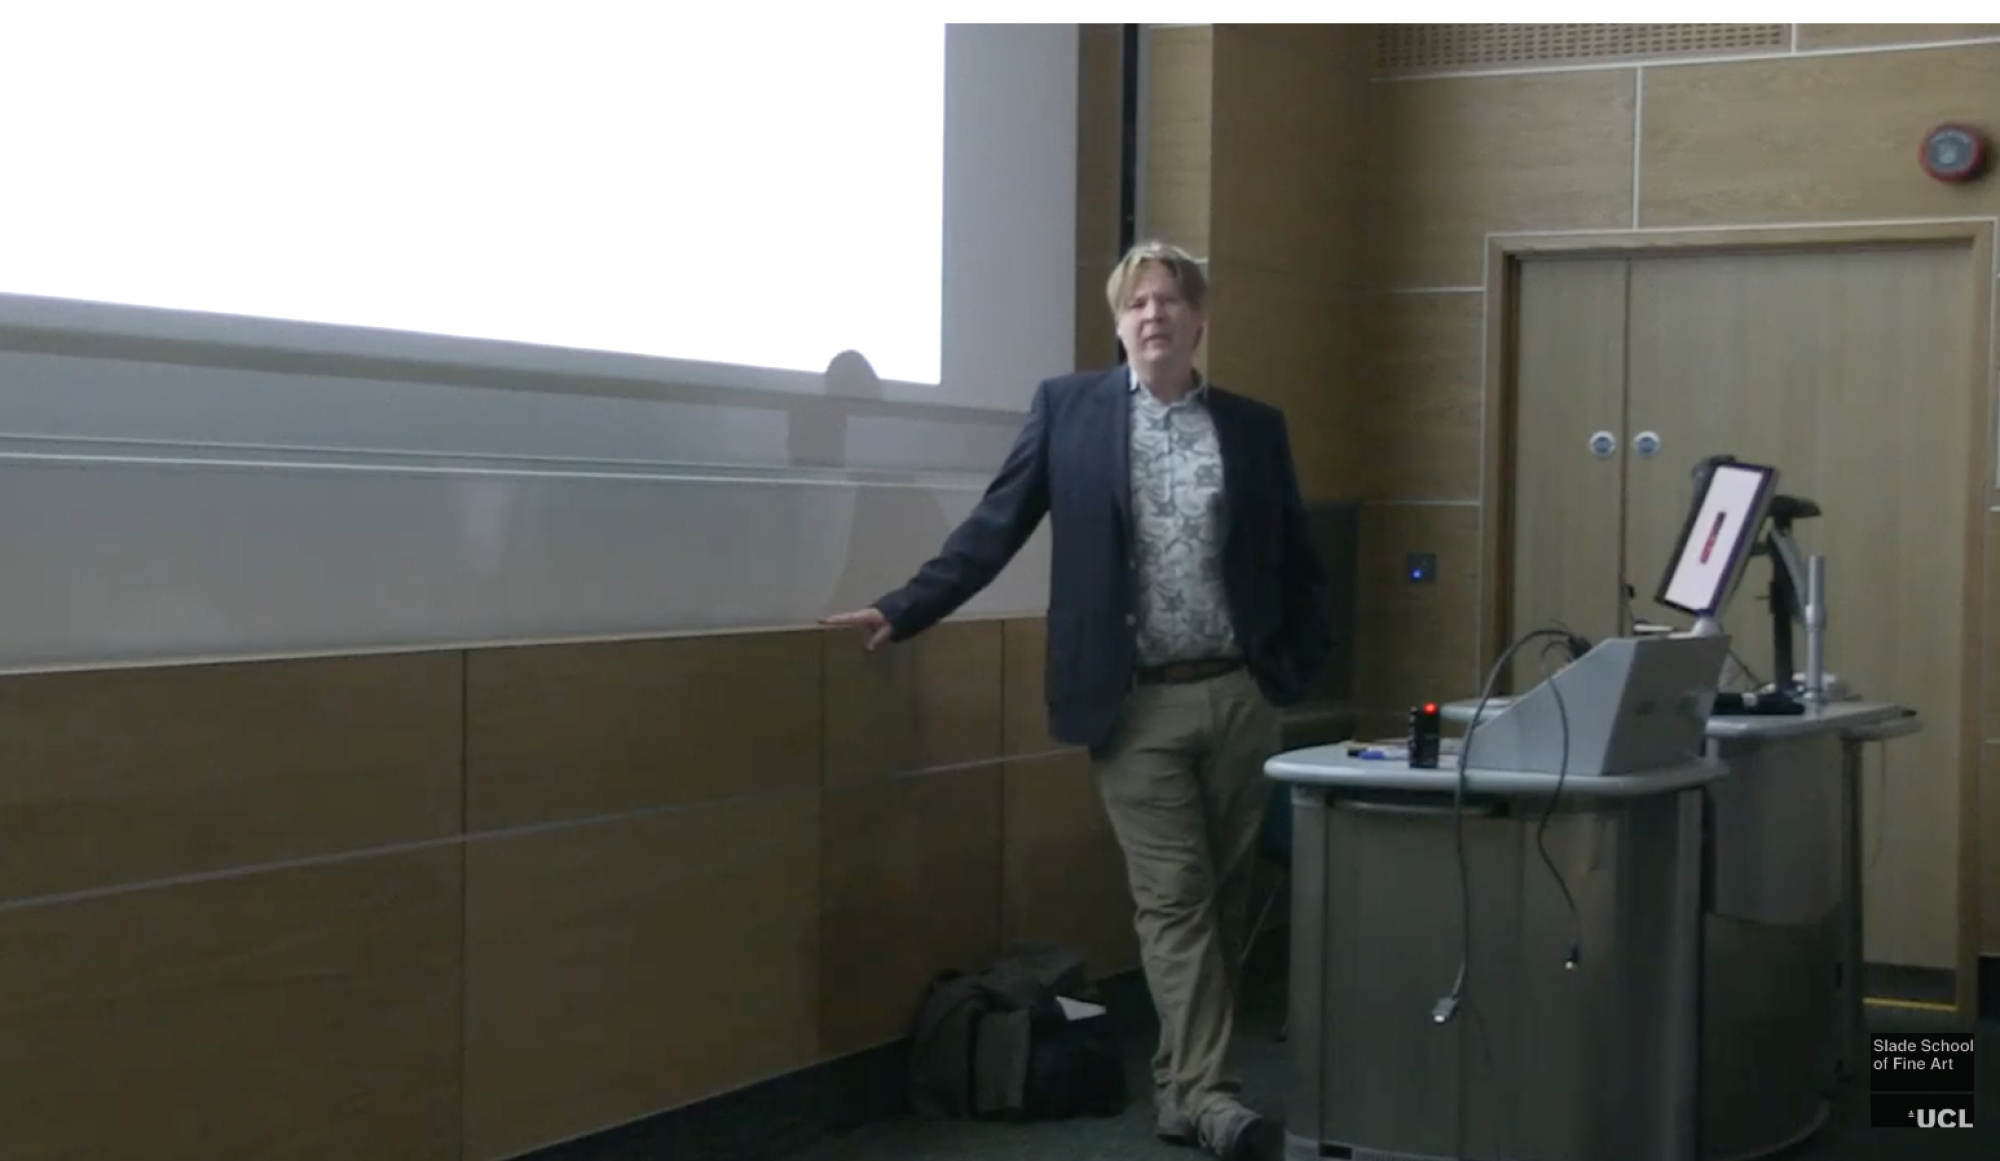 Jon Revett, Contemporary Art Lecture, 2016 (screenshot)